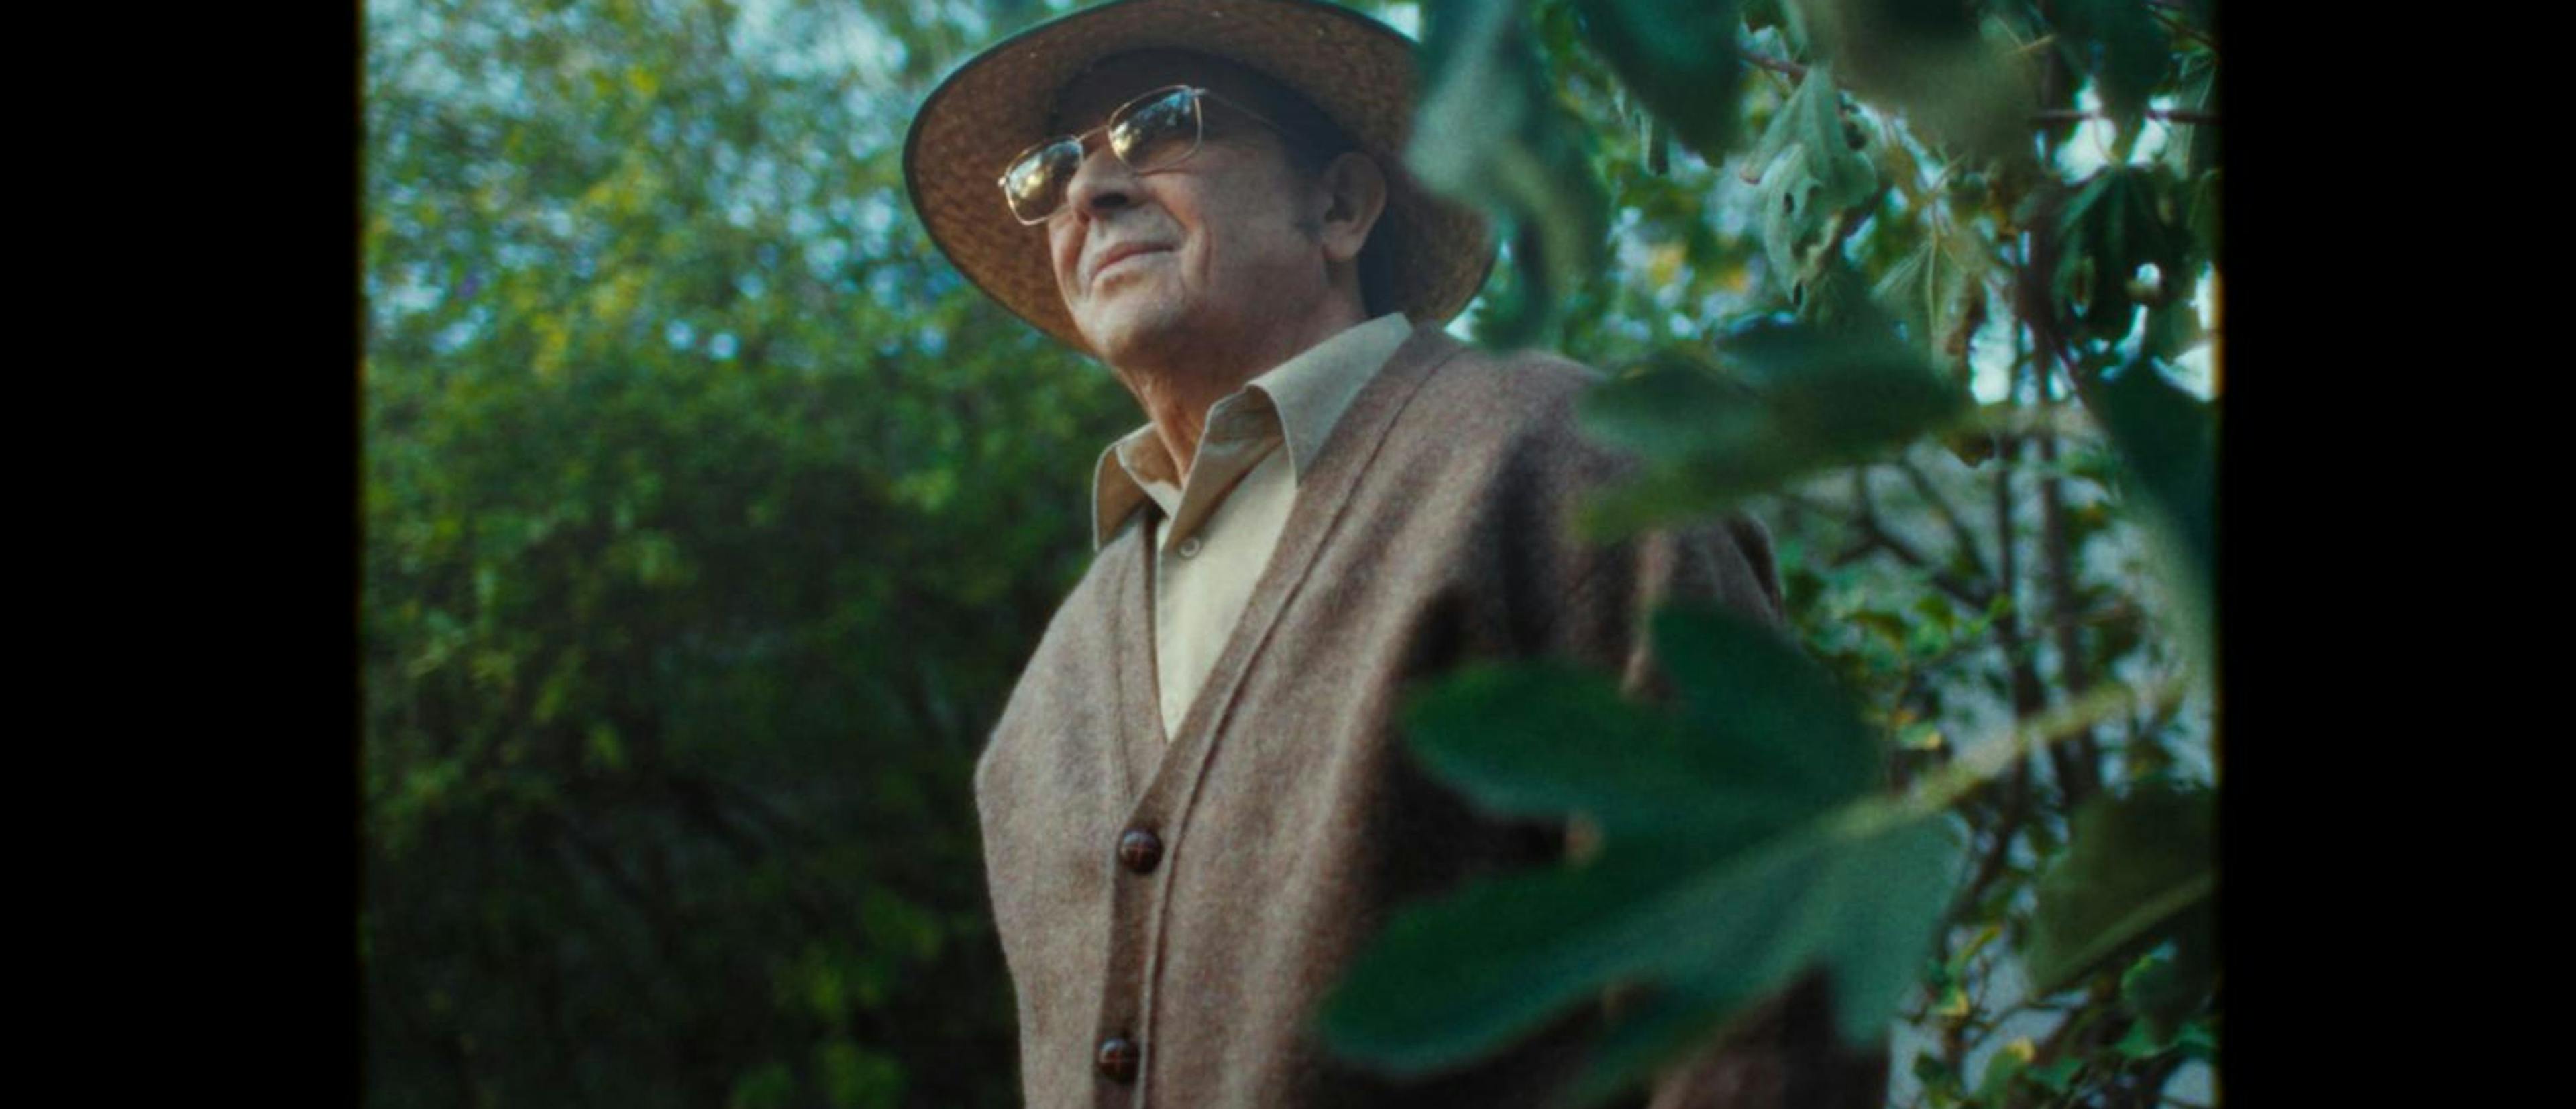 Luis Callejo interpreta al padre ausente de 'La casa', la adaptación de la novela gráfia de Paco Roca que ha rodado Álex Montoya